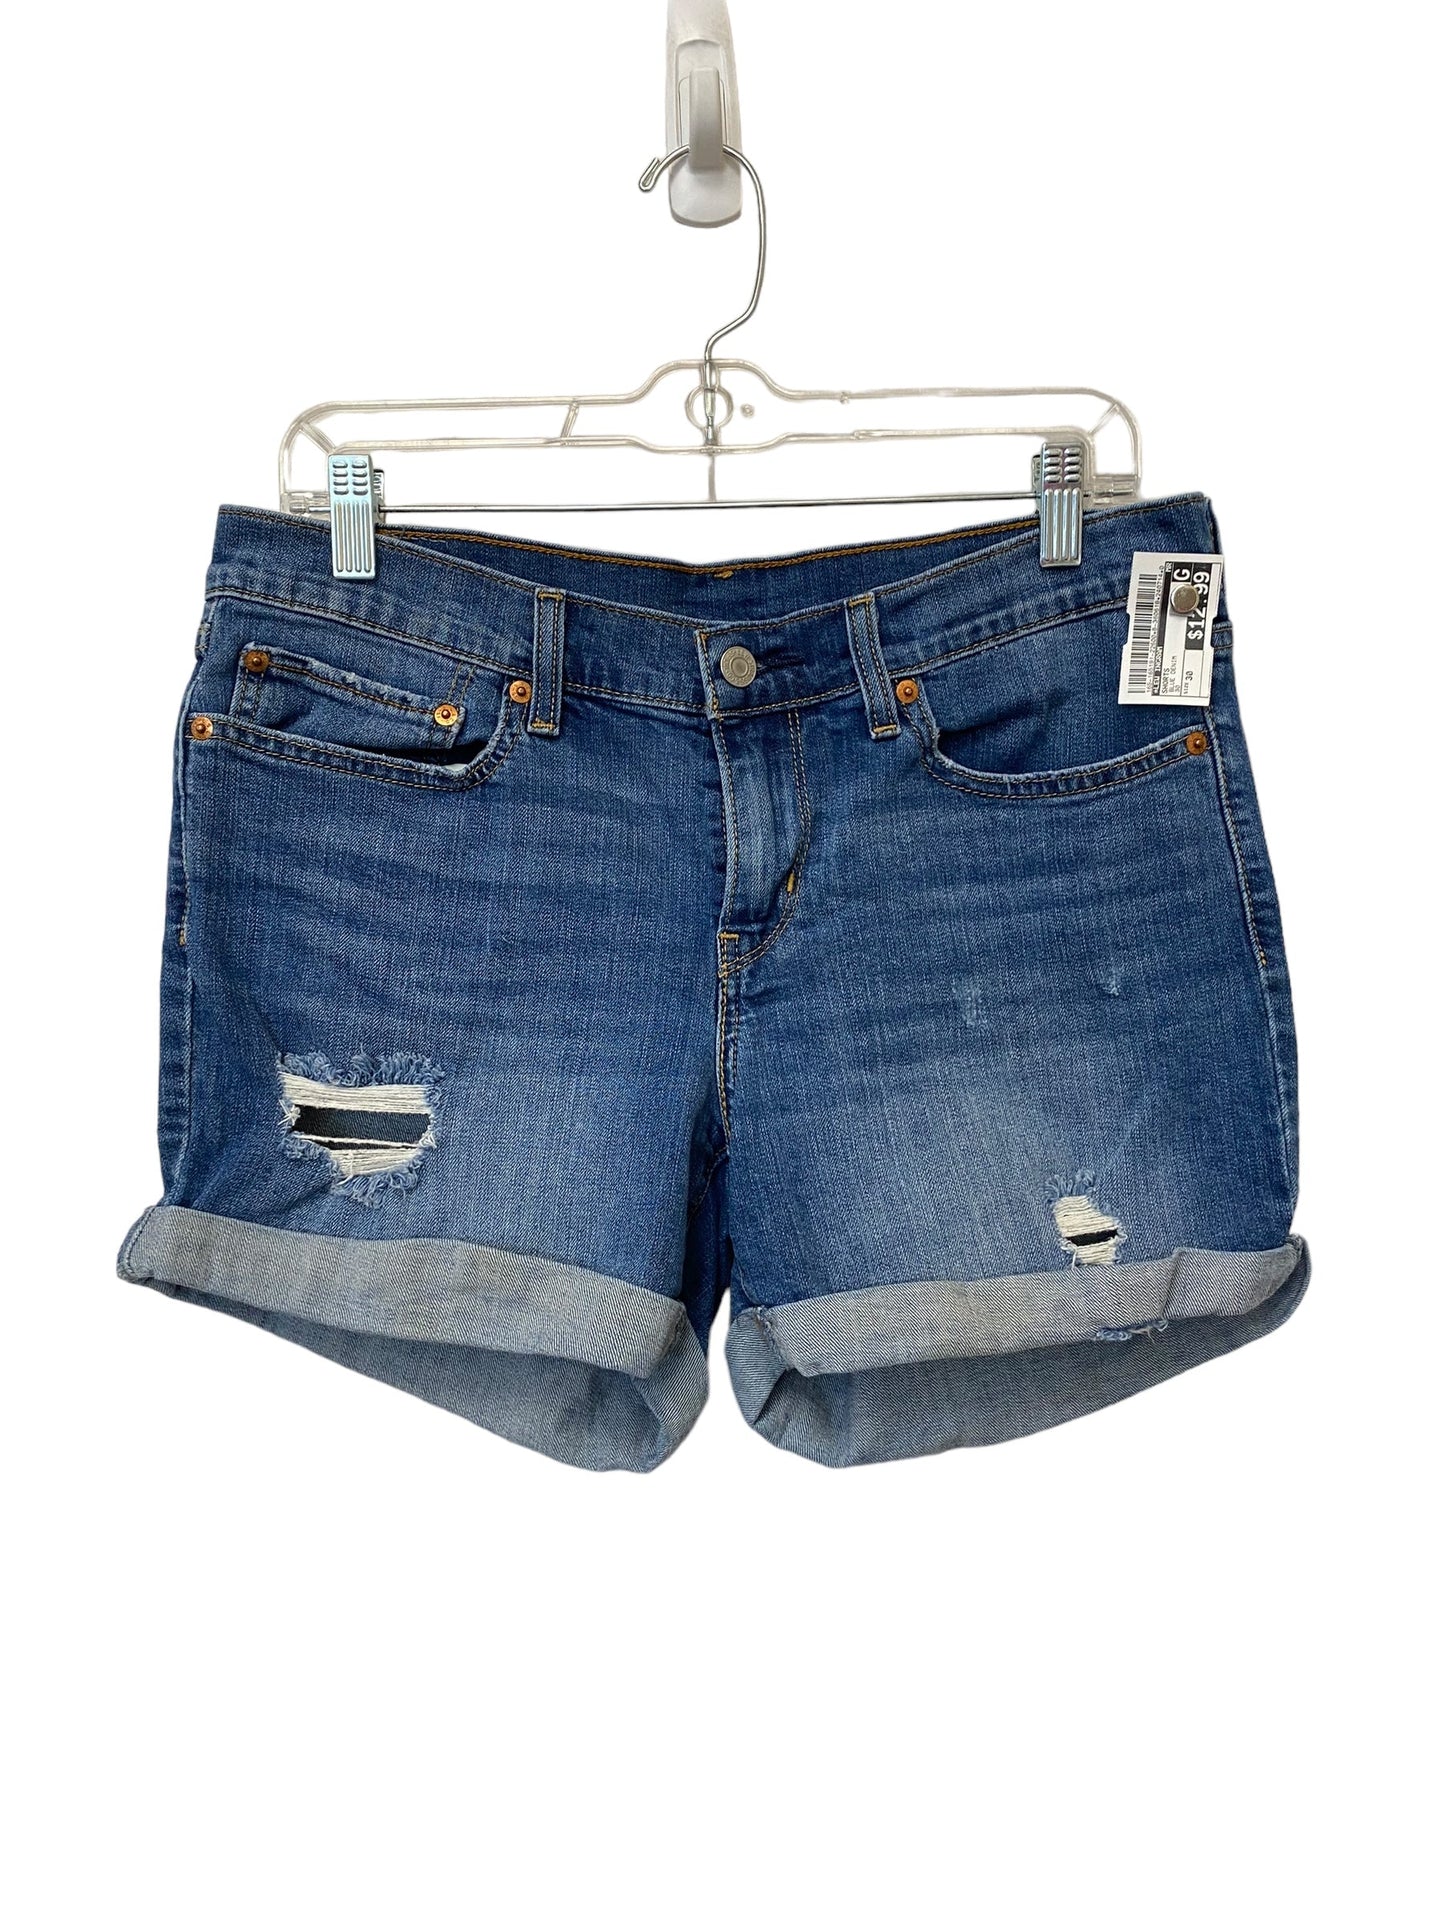 Blue Denim Shorts Lew Ingram, Size 30